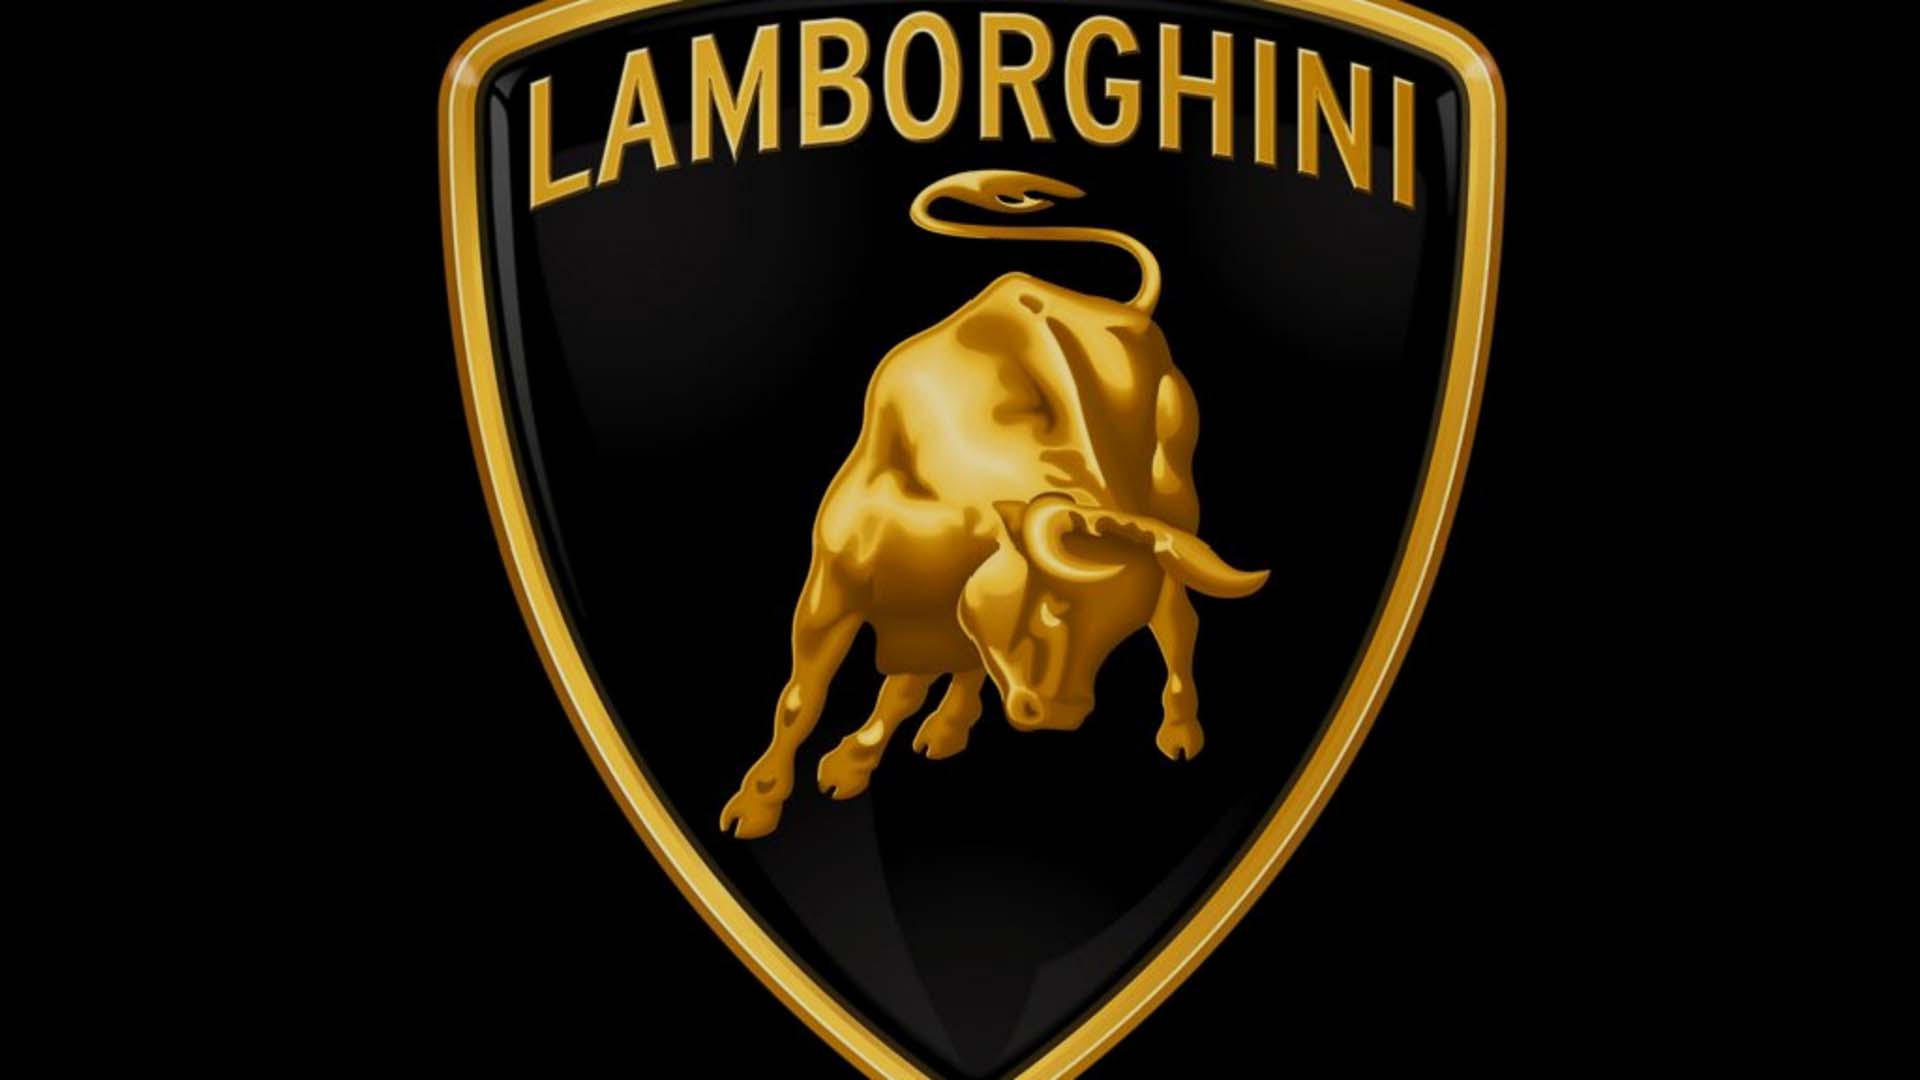 Free download Lamborghini Logo Wallpaper For iPhone image 350